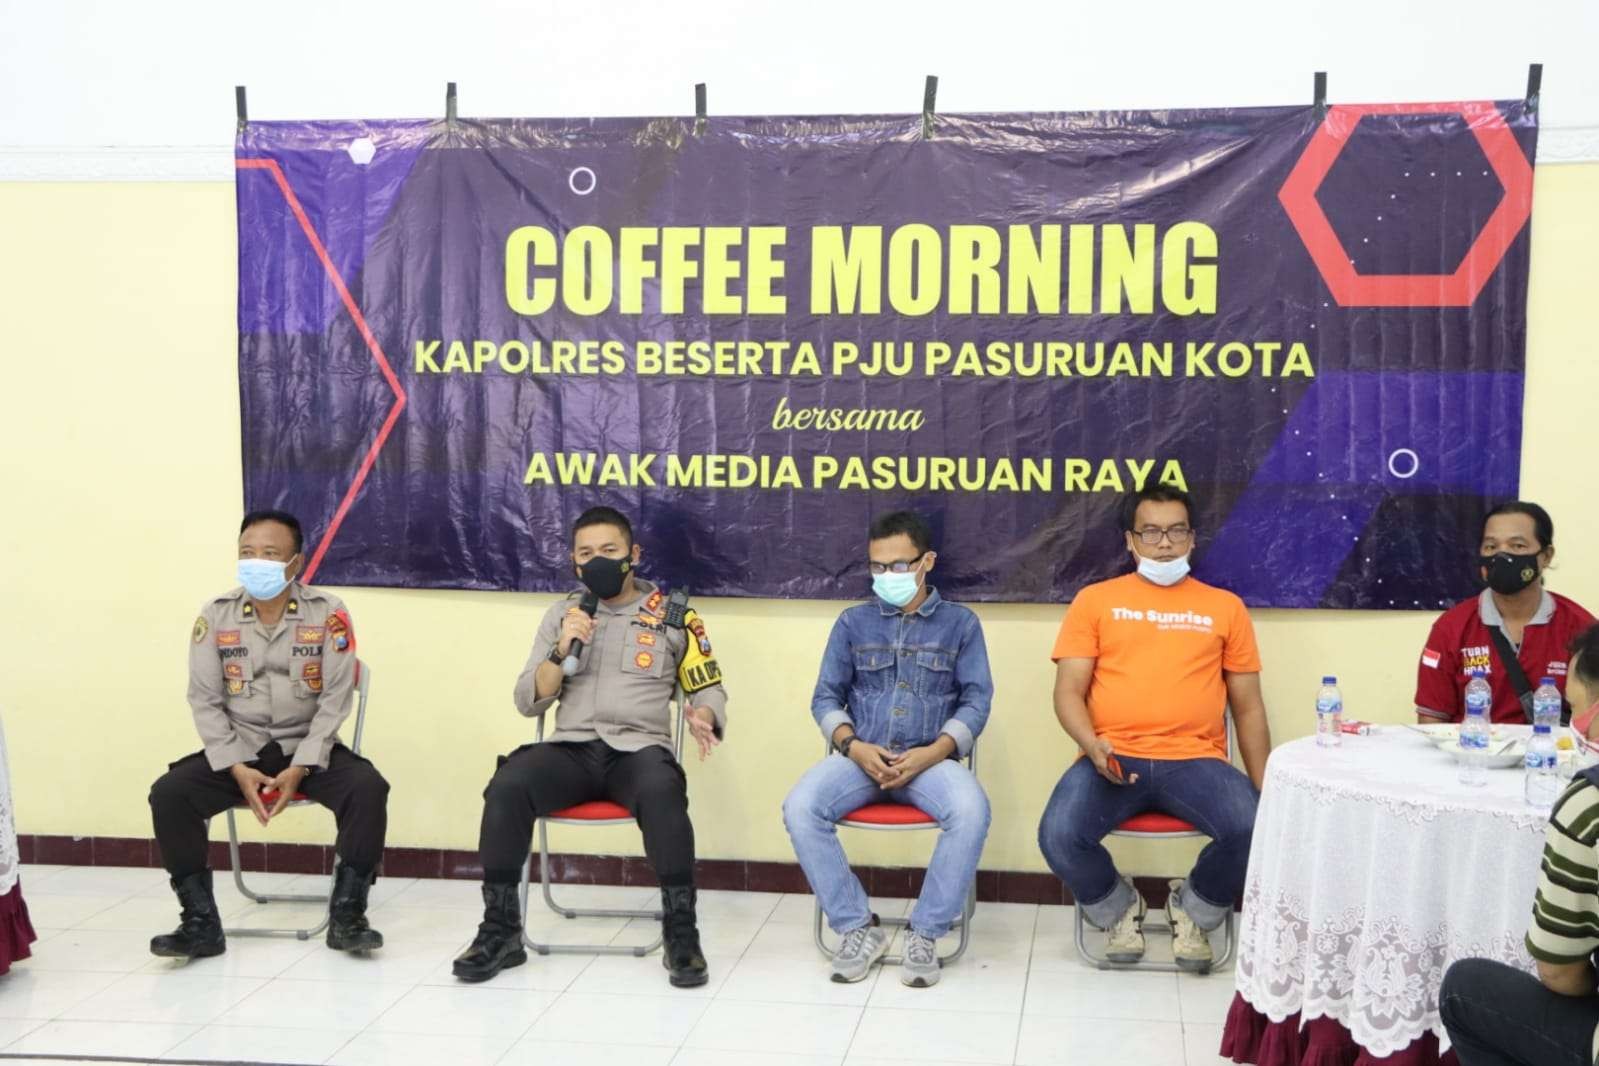 Coffee morning Polres Pasuruan Kota dengan jurnalis Pasuruan (Foto: Humas Polres Pasuruan Kota)